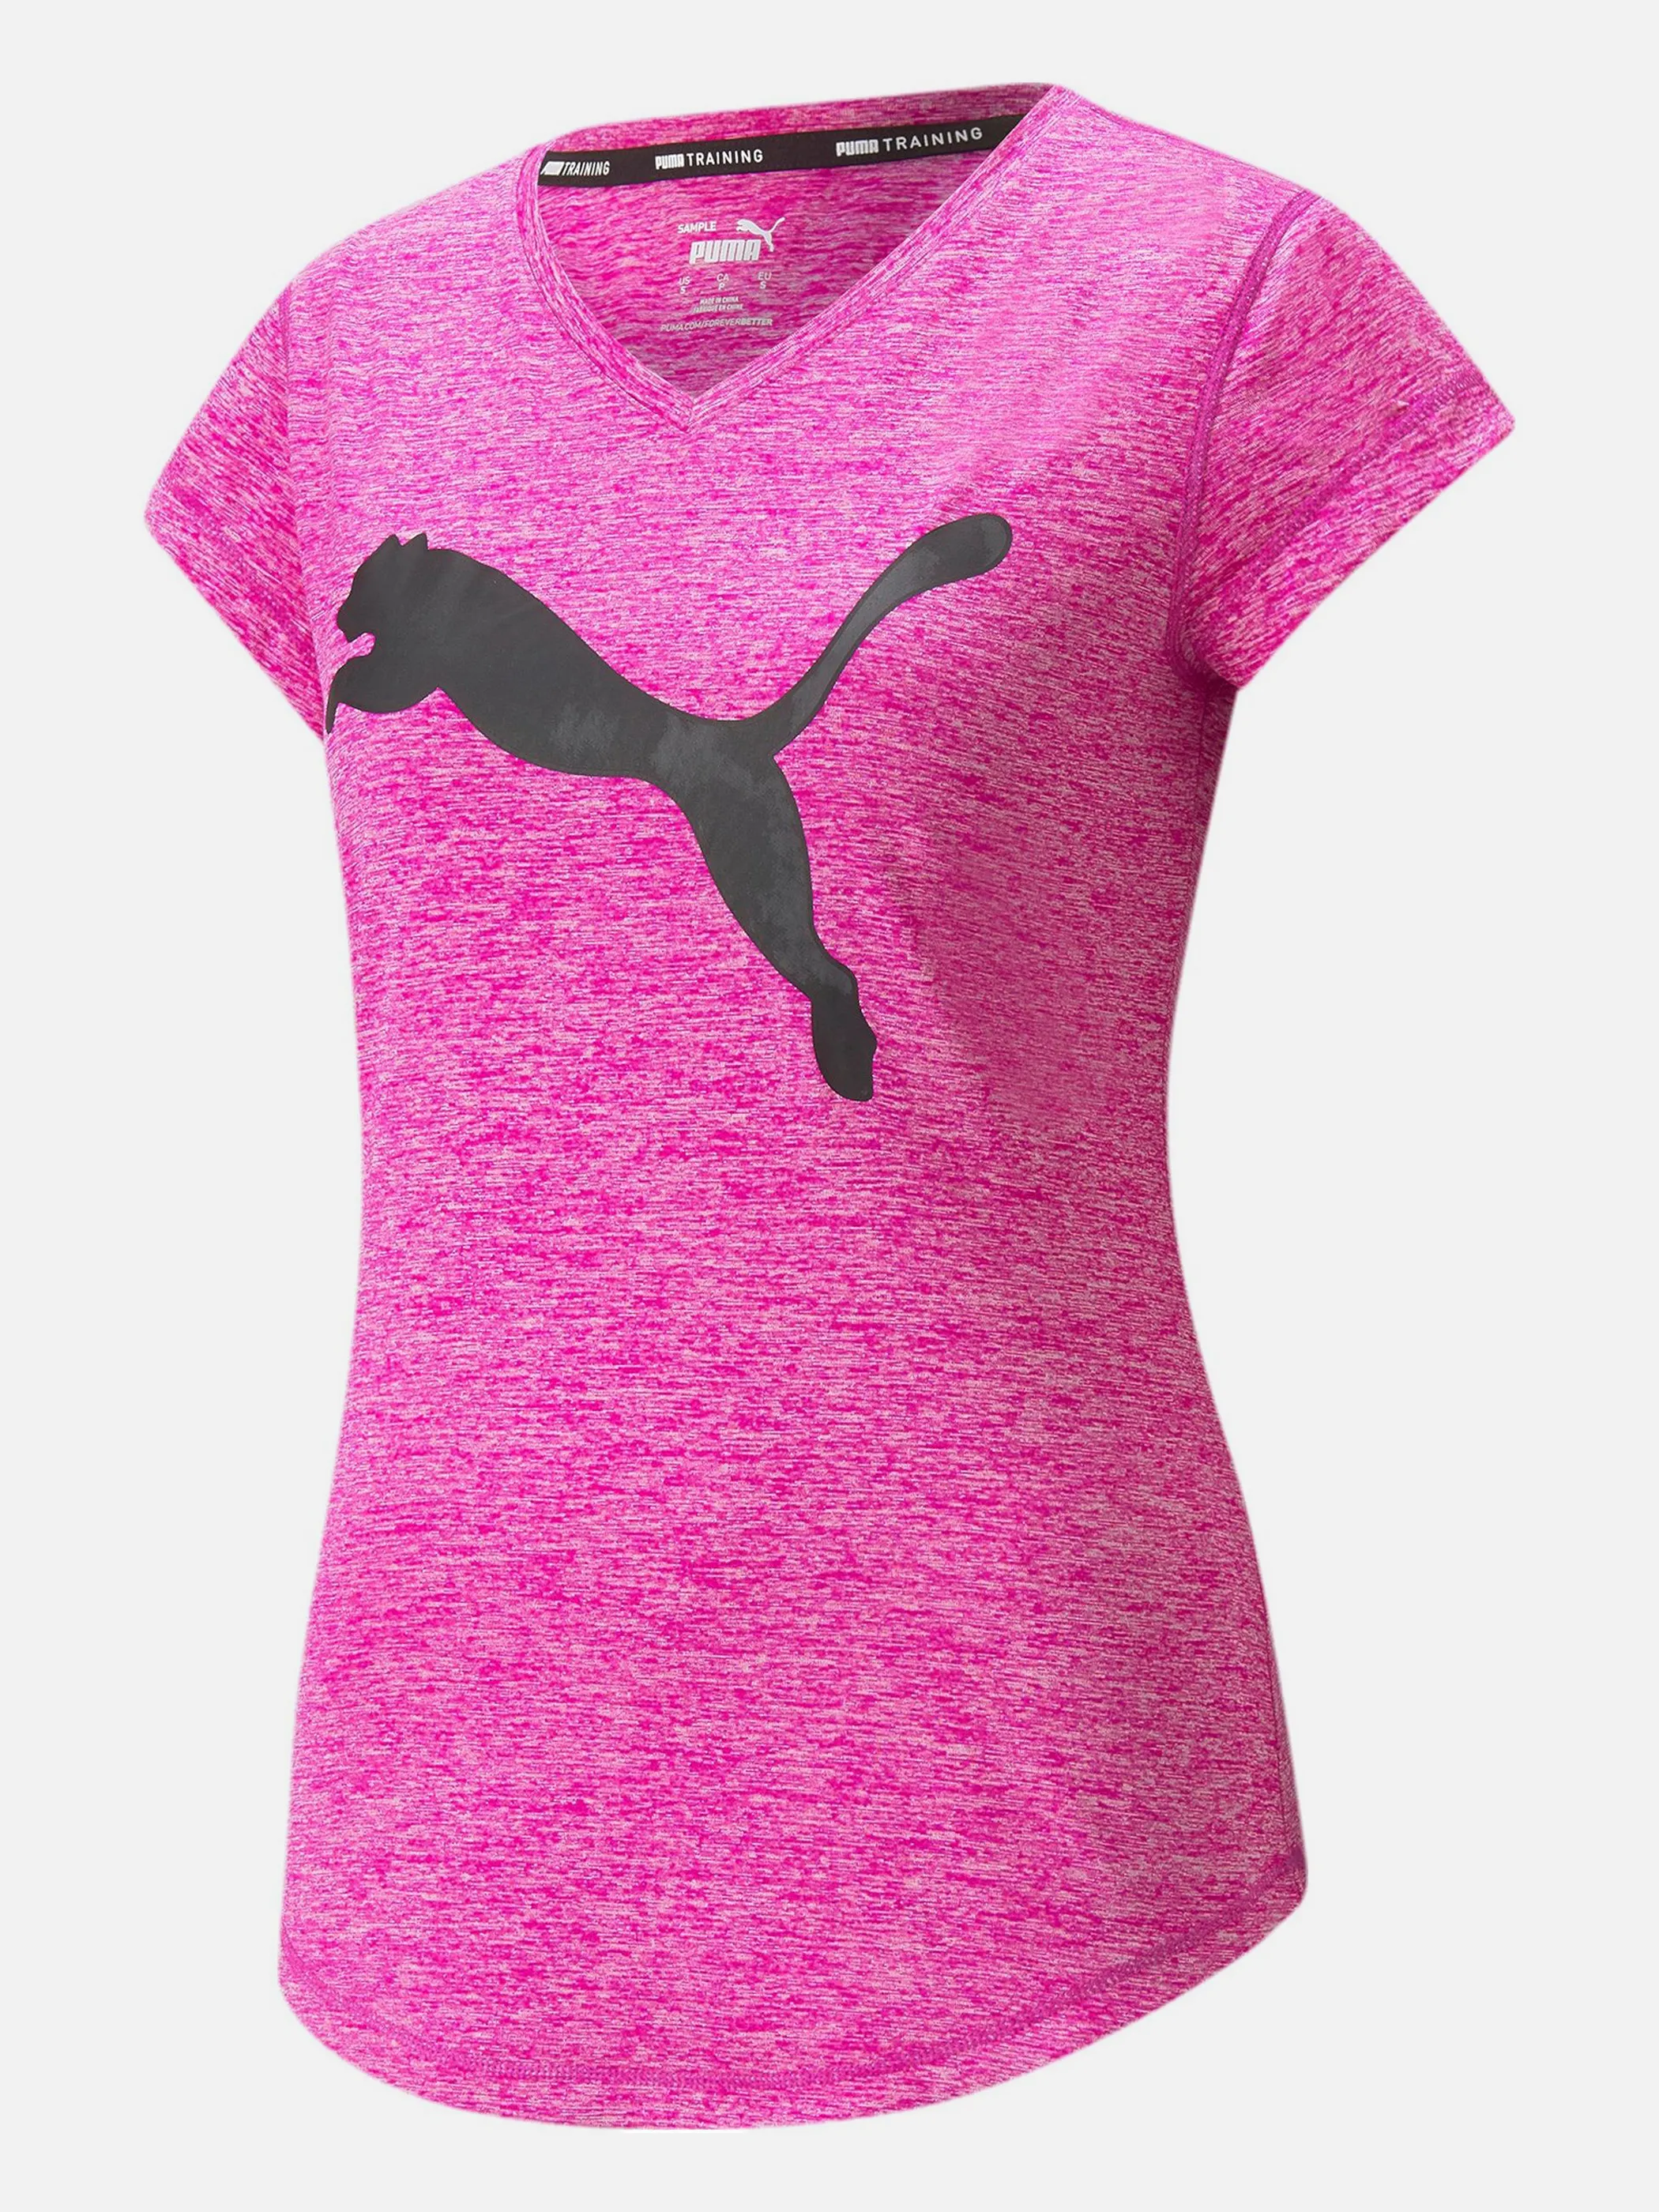 Puma 519526 Da-T-Shirt, Logo Pink 846777 13 1